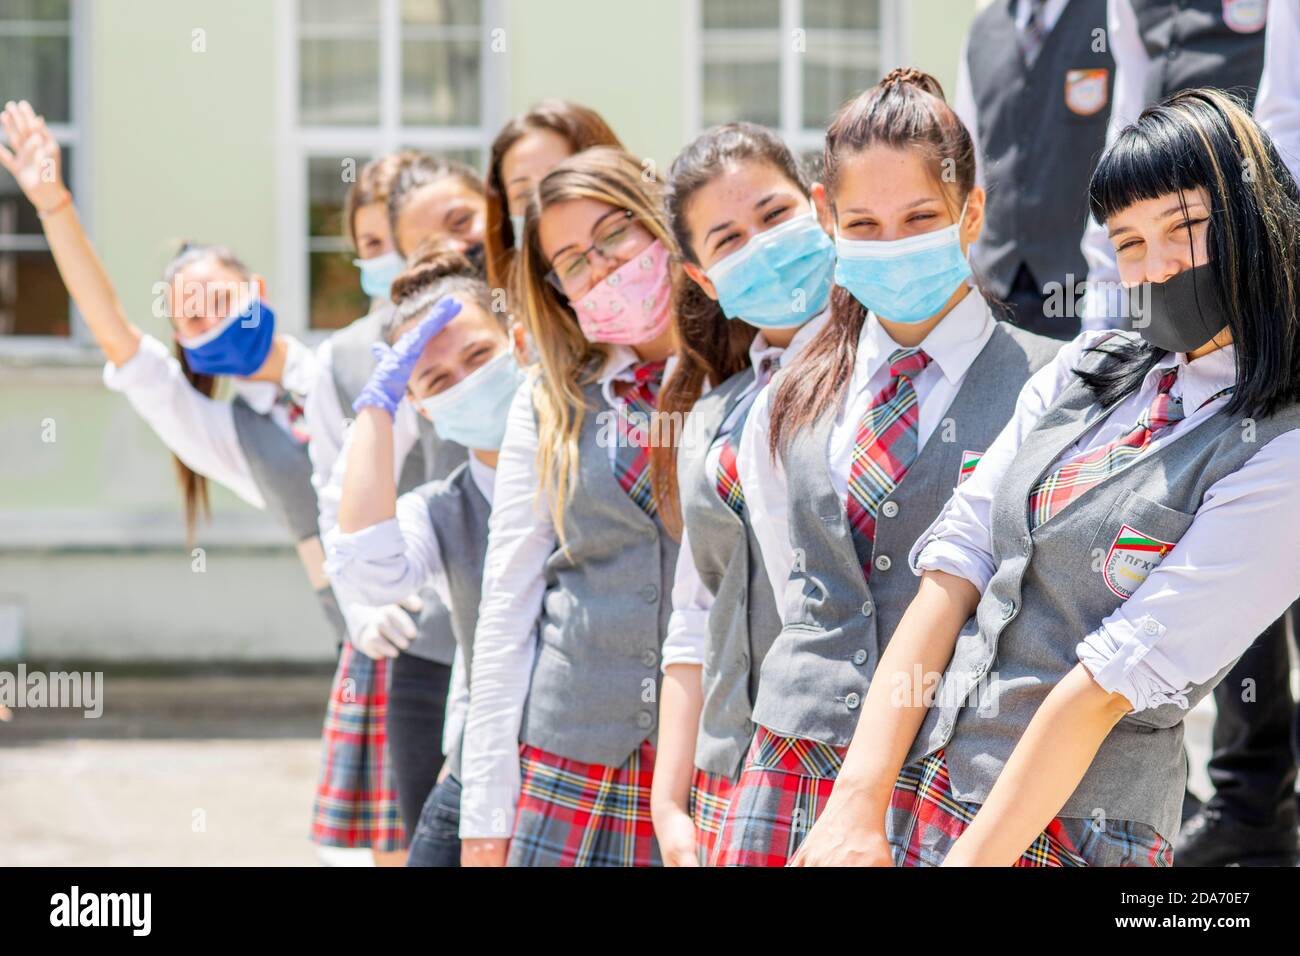 Sliven, Bulgaria - 11 de junio de 2020: Niñas que se preparan para la graduación de la escuela secundaria durante el distanciamiento social del coronavirus Covid-19, llevando la cara cubierta / m Foto de stock